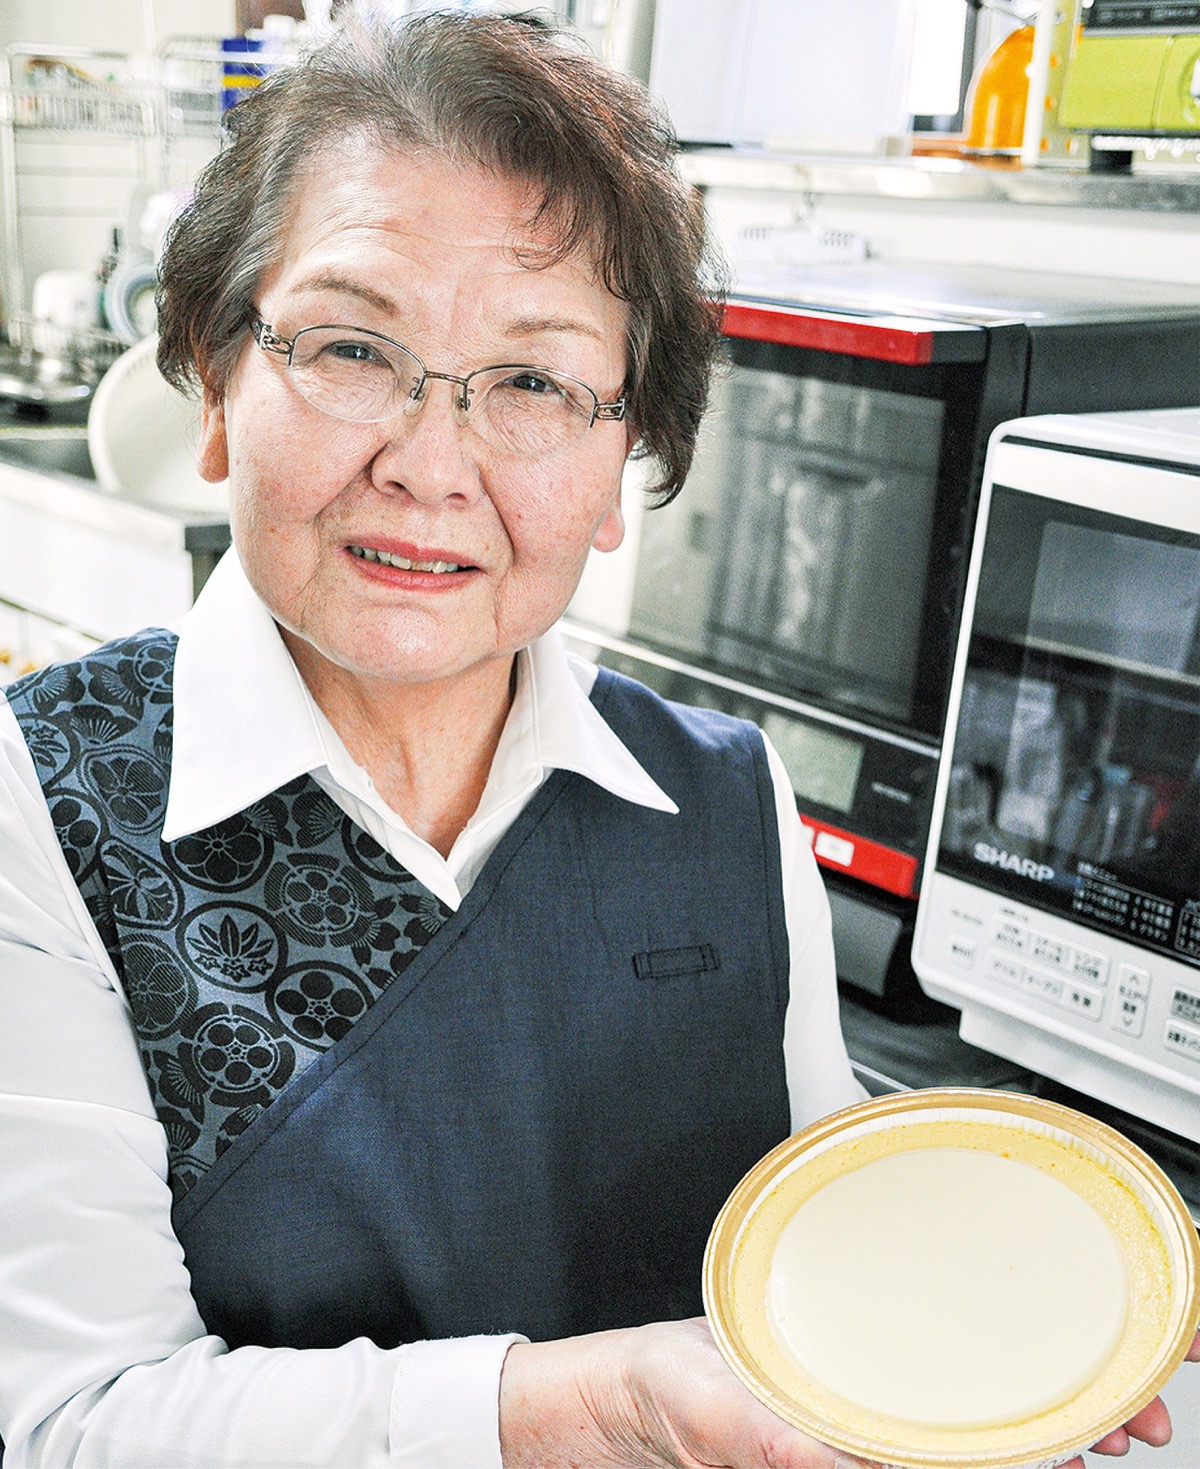 いきいきシニアの 元気の源 は チーズケーキ専門店の熊木さん 横須賀 タウンニュース